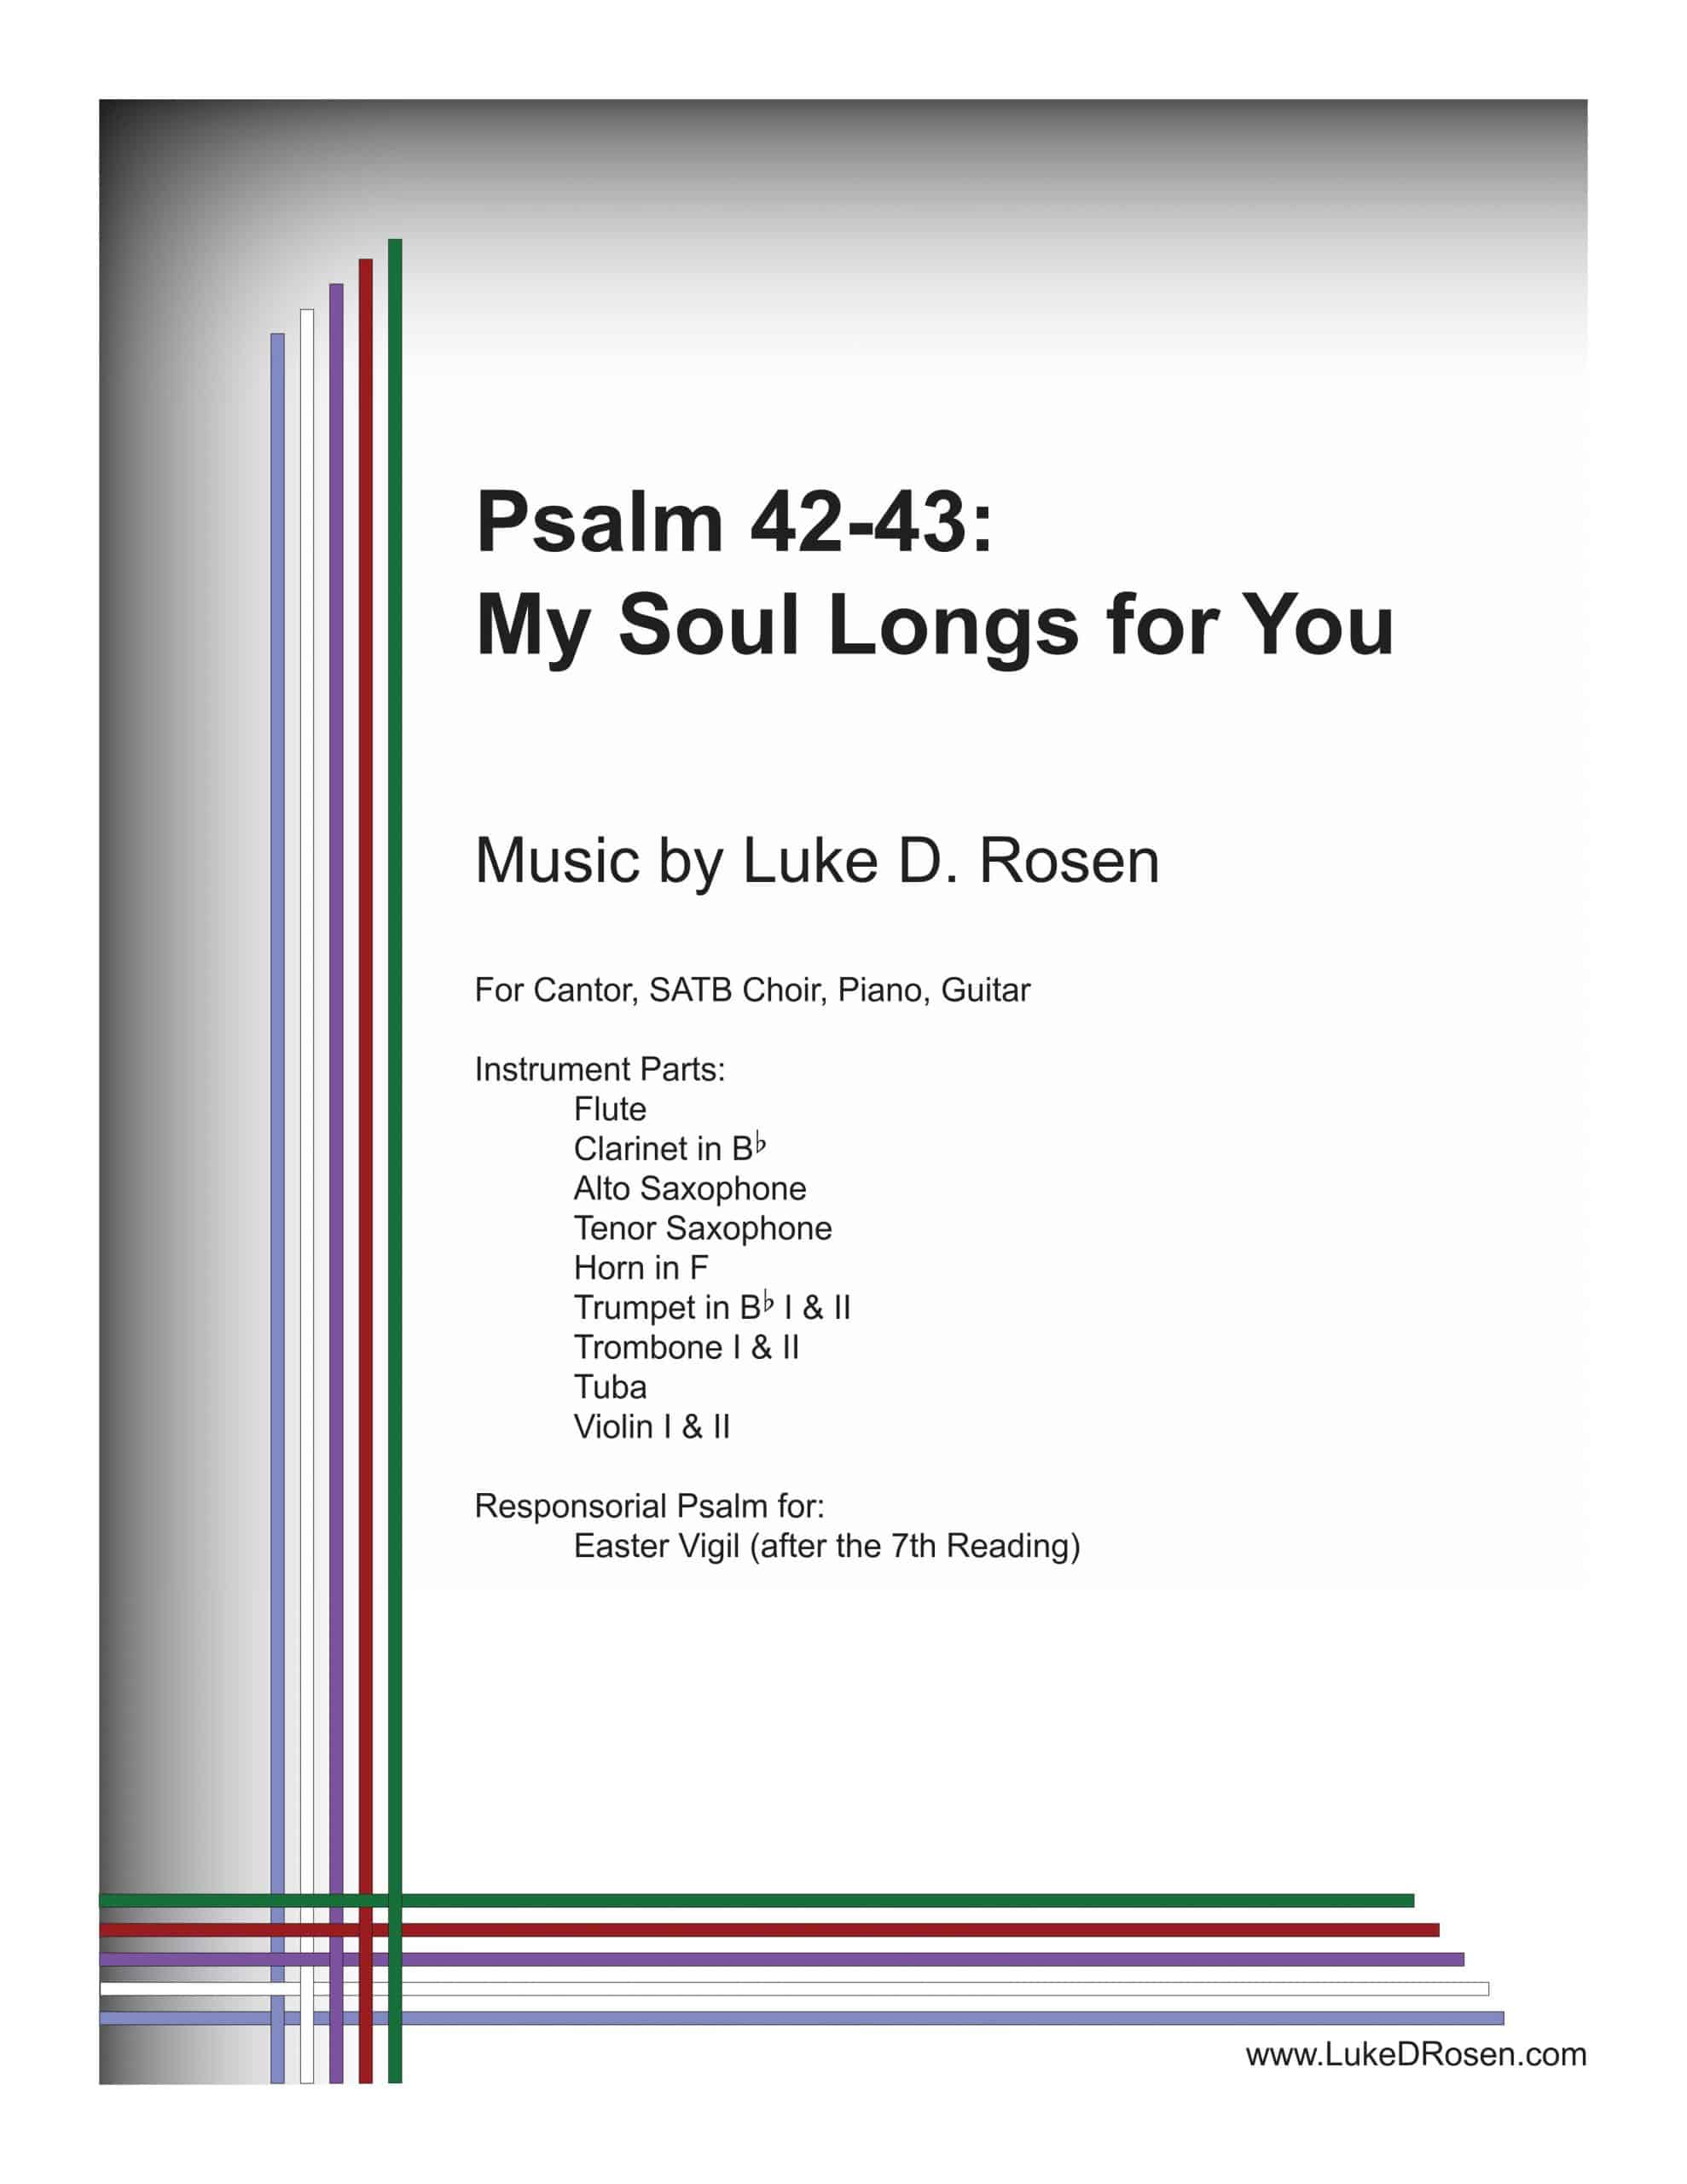 Psalm 42 – My Soul Longs for You (Rosen)